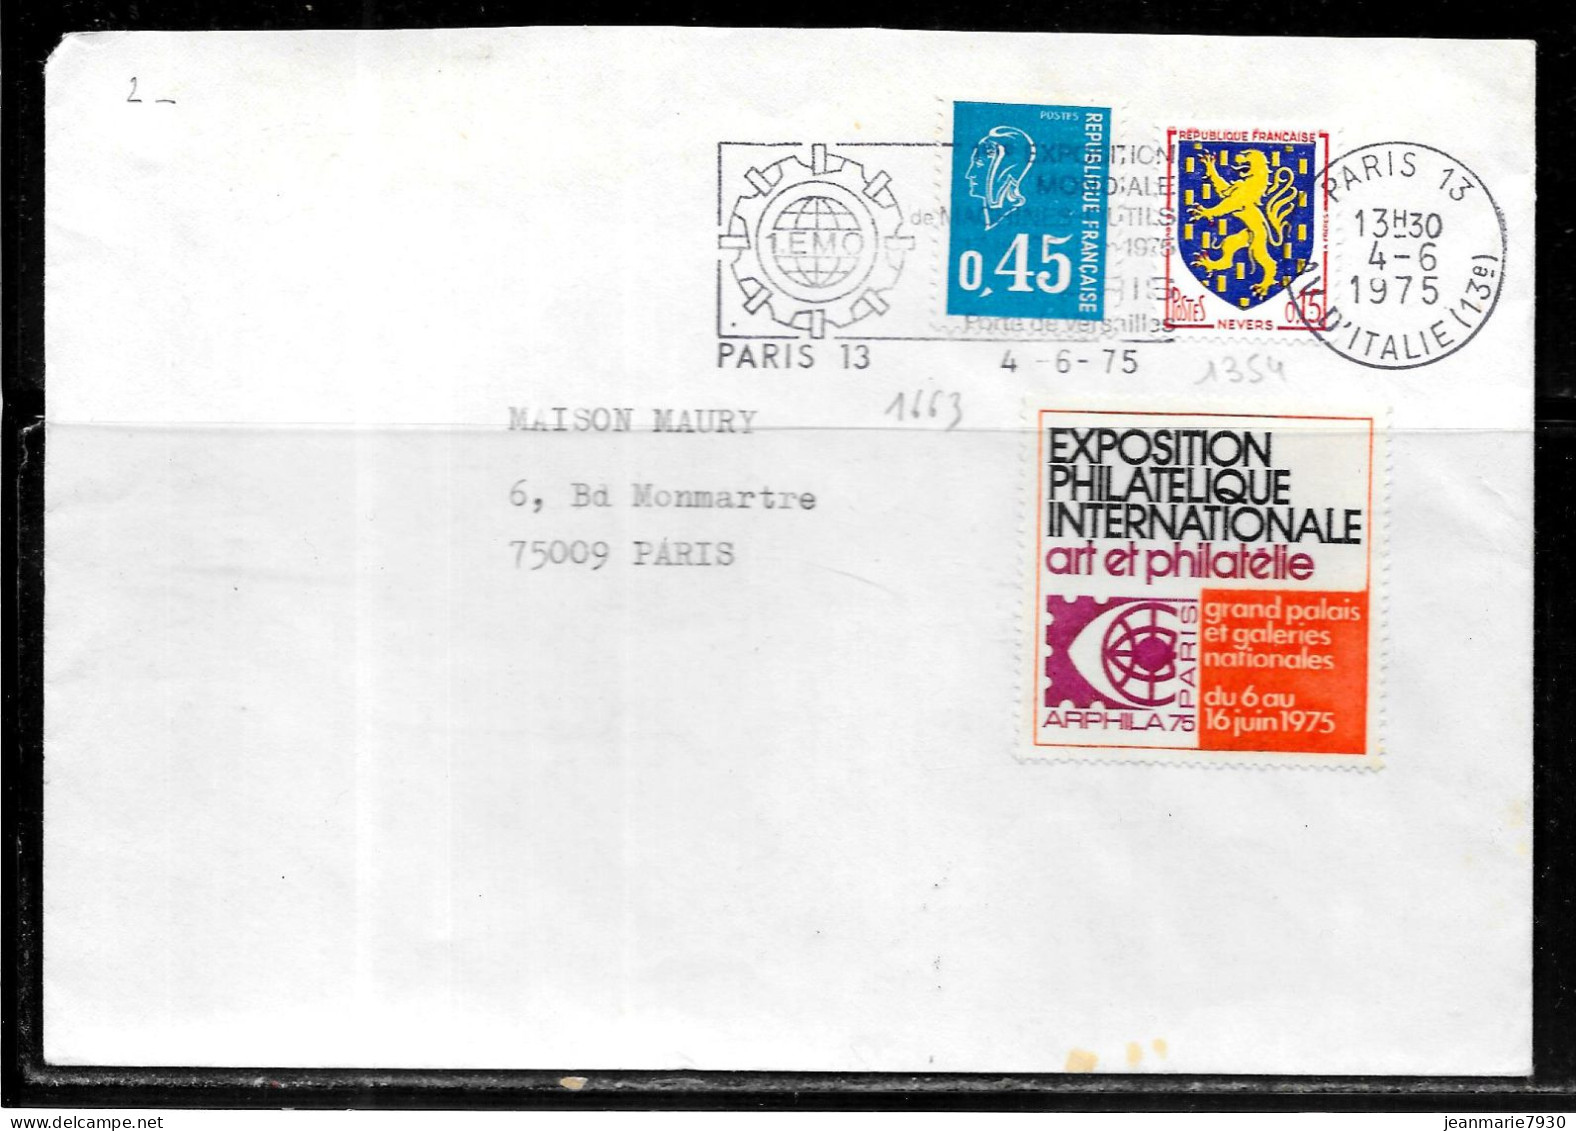 F269 - LETTRE DE PARIS 13 DU 04/06/75 - VIGNETTE ARPHILA 75 - Cartas & Documentos